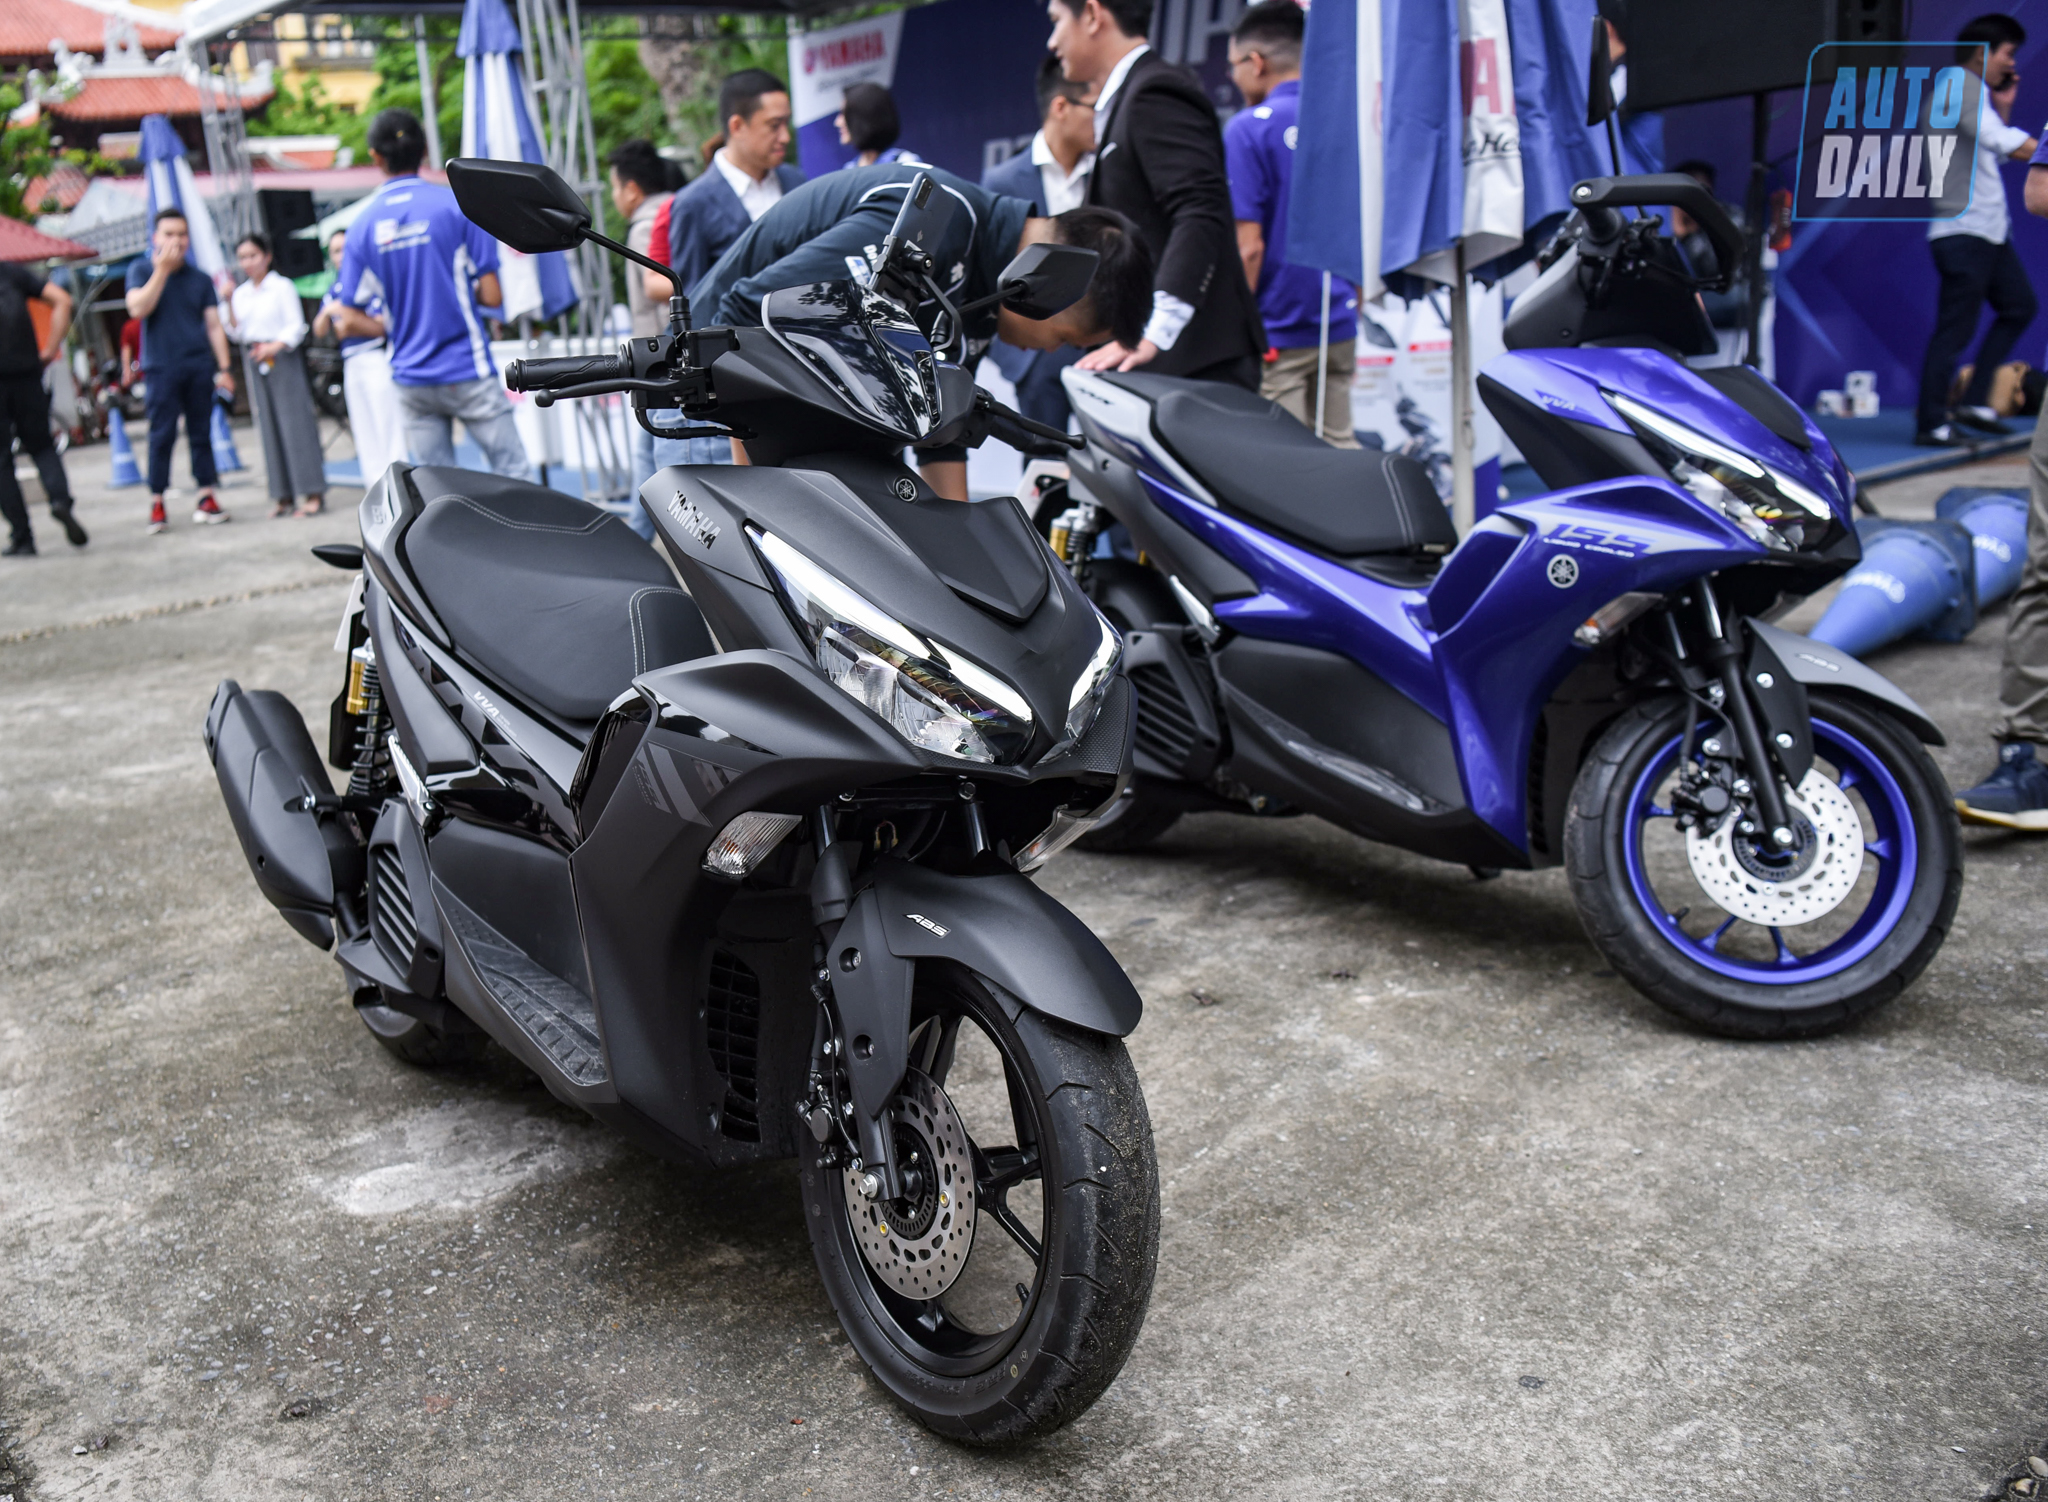 Chi tiết xe tay ga thể thao Yamaha NVX 155 2021 giá từ 53 triệu đồng yamaha-nvx-38.jpg